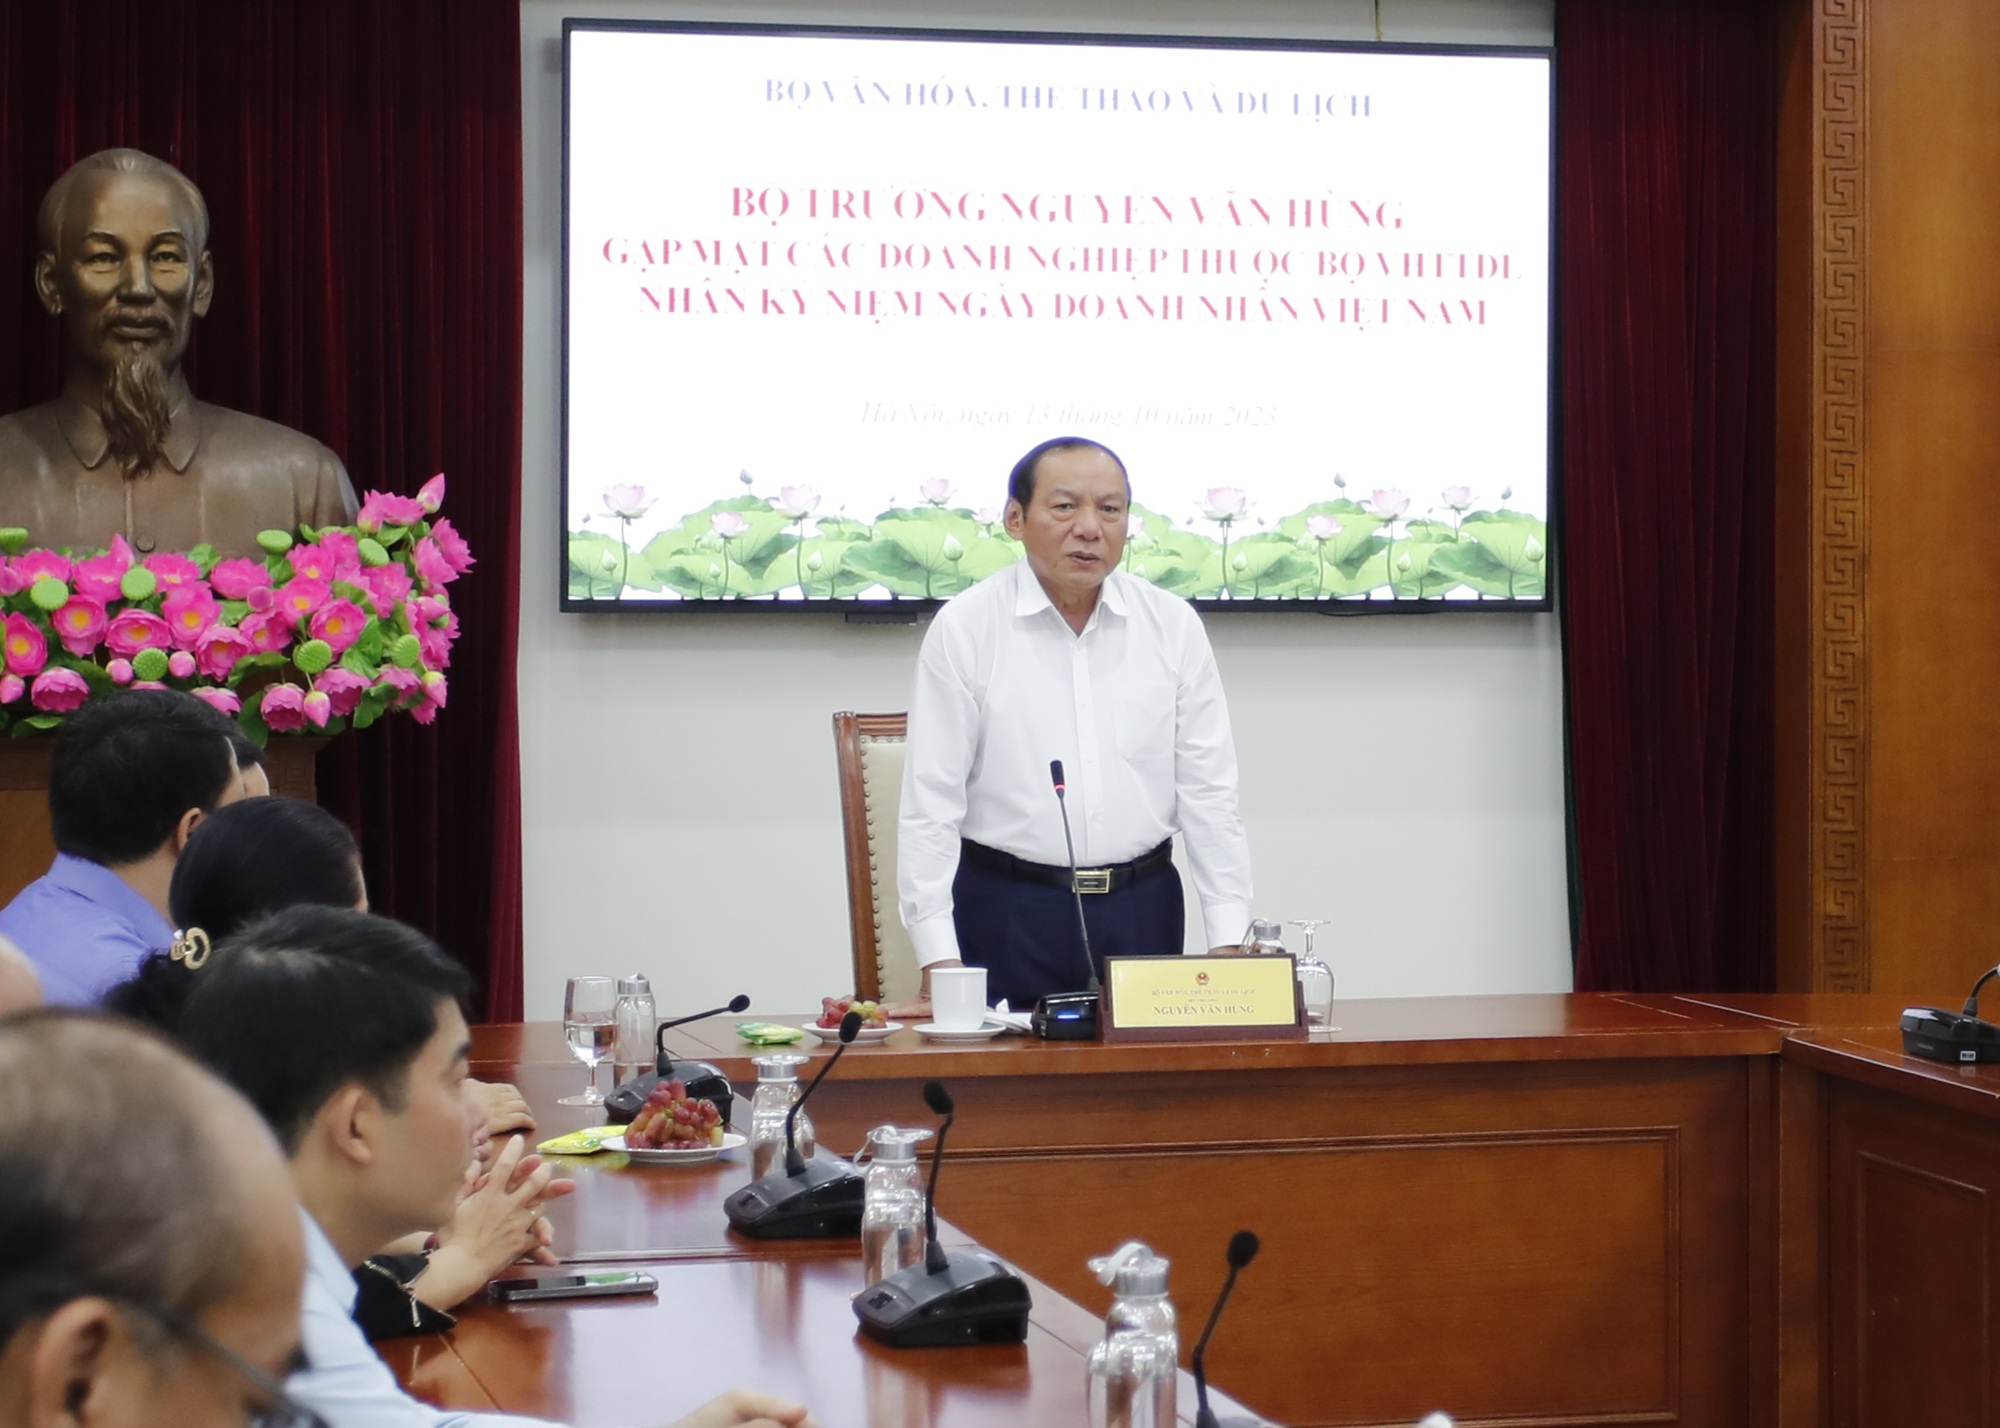 Bộ trưởng Nguyễn Văn Hùng: Doanh nghiệp thuộc Bộ VHTTDL phải có tầm nhìn, tư duy mới để kiến tạo và phát triển